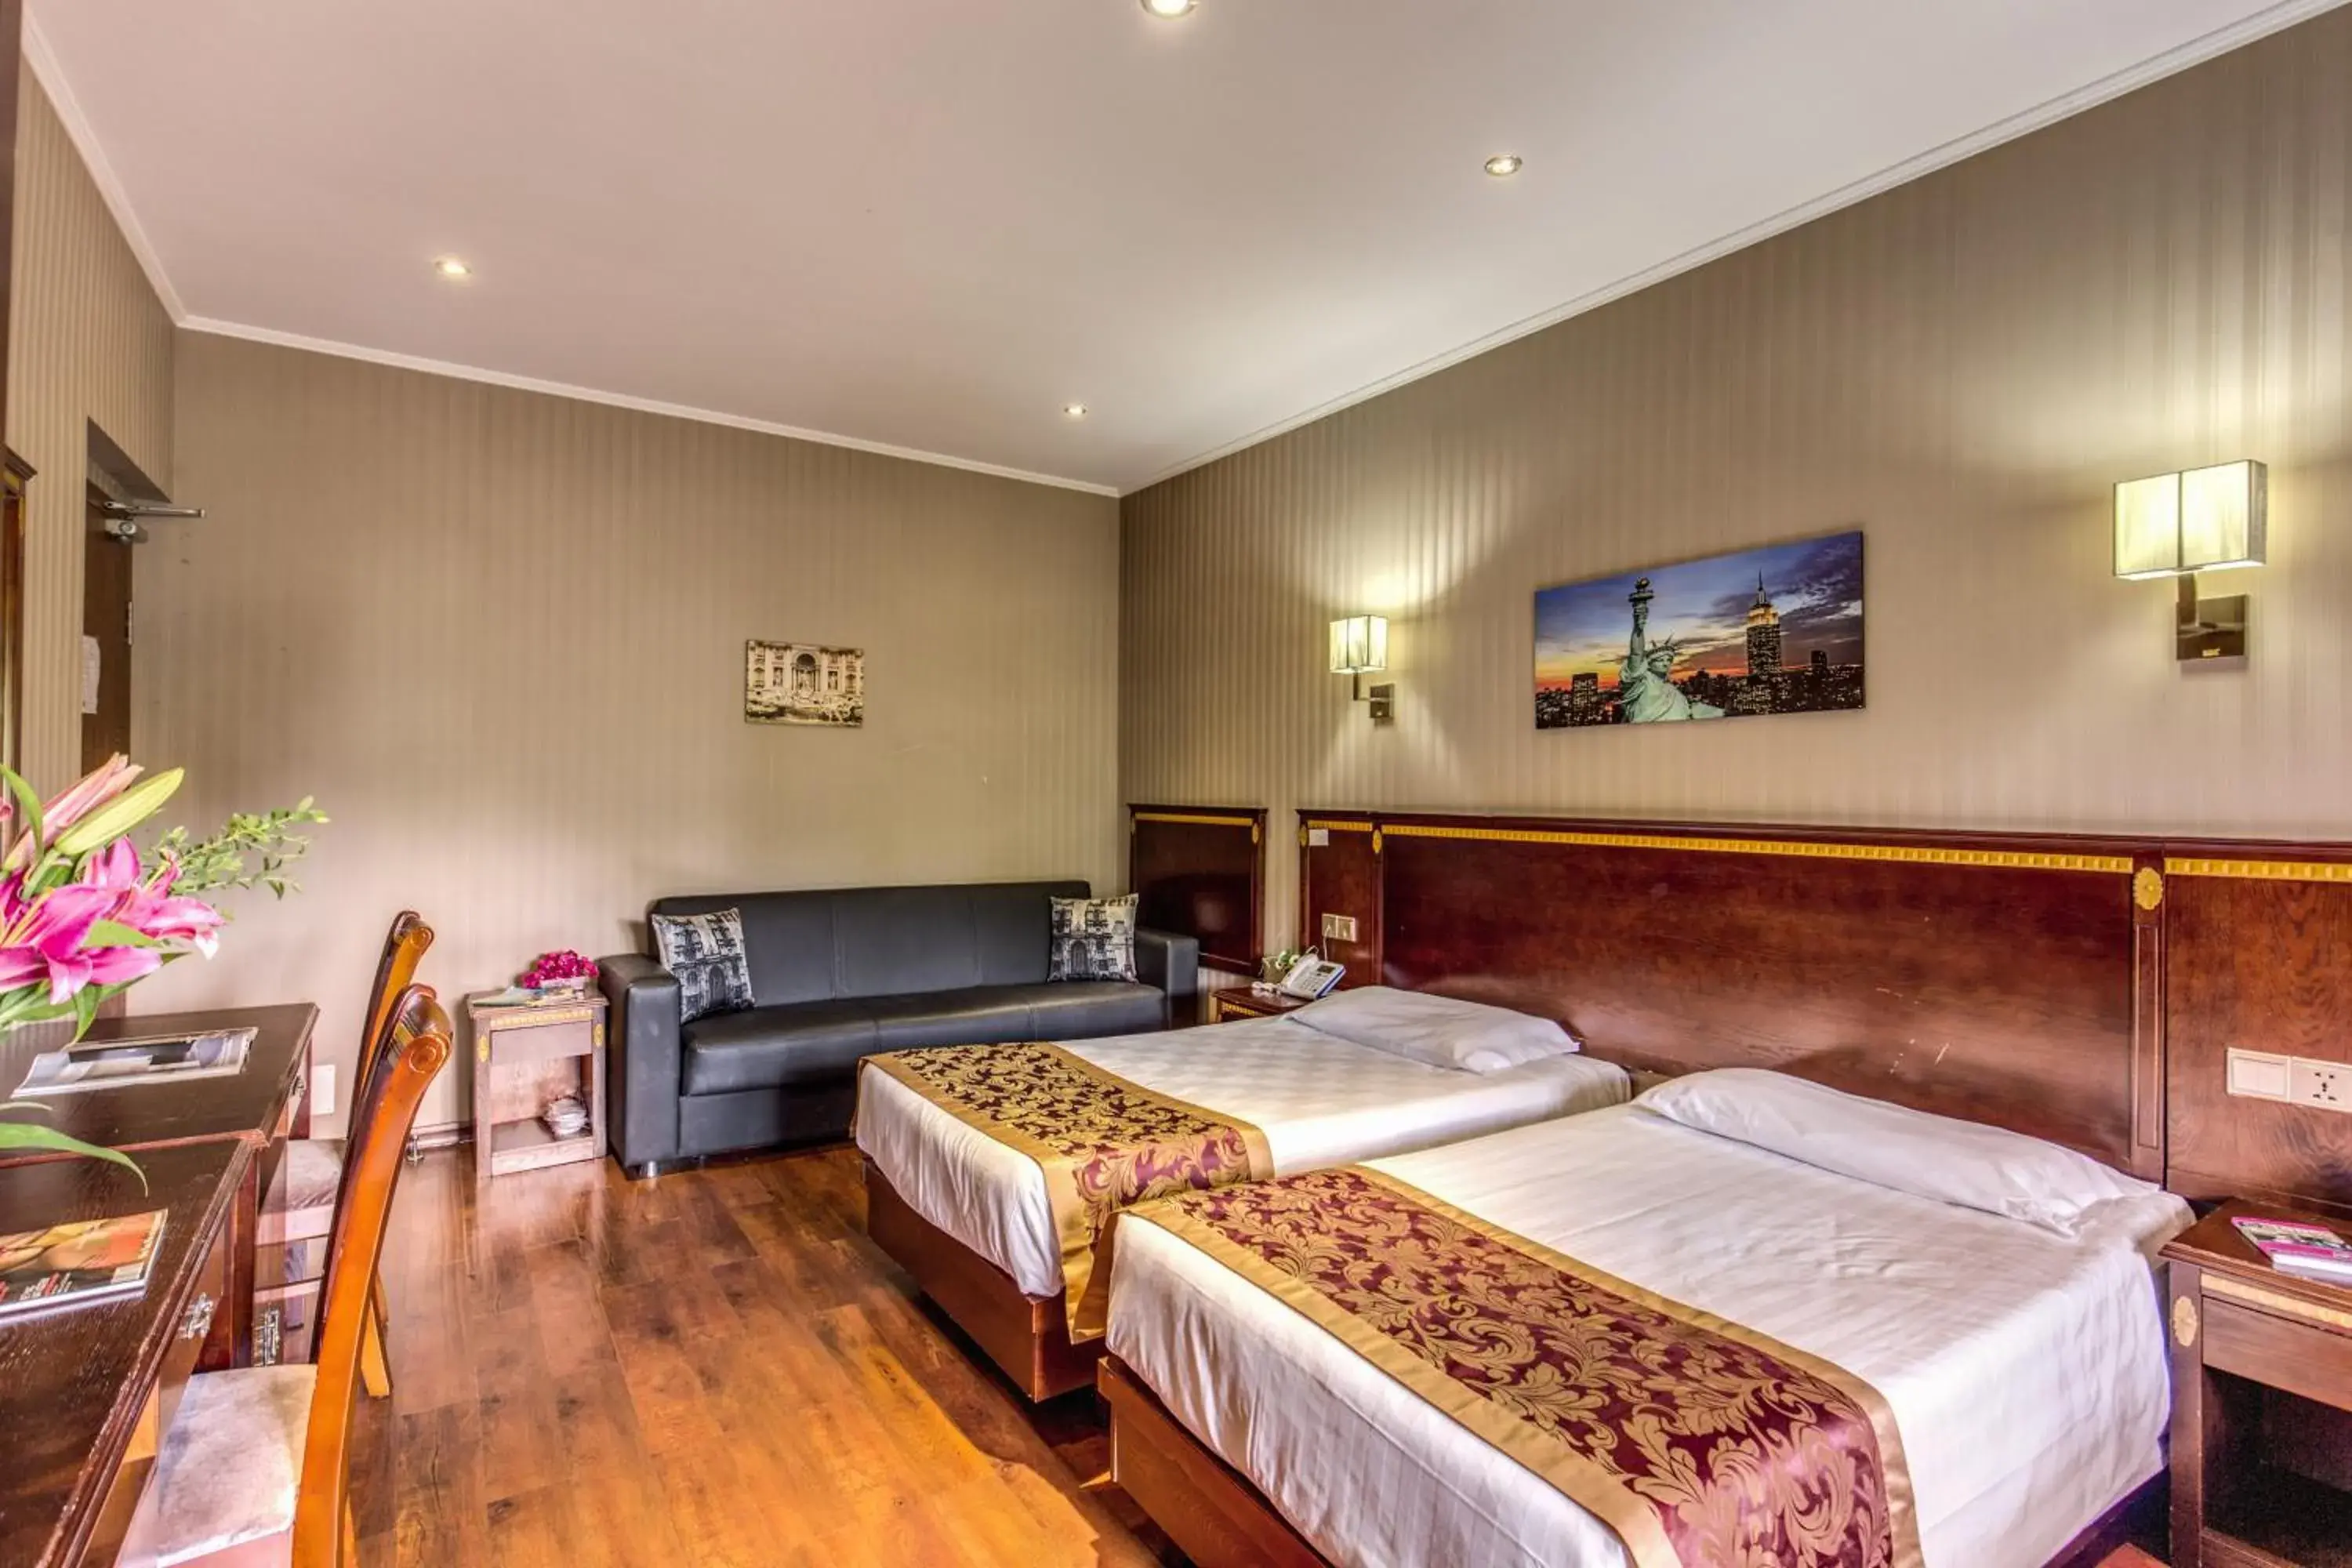 Bedroom, Room Photo in Hotel Rome Love